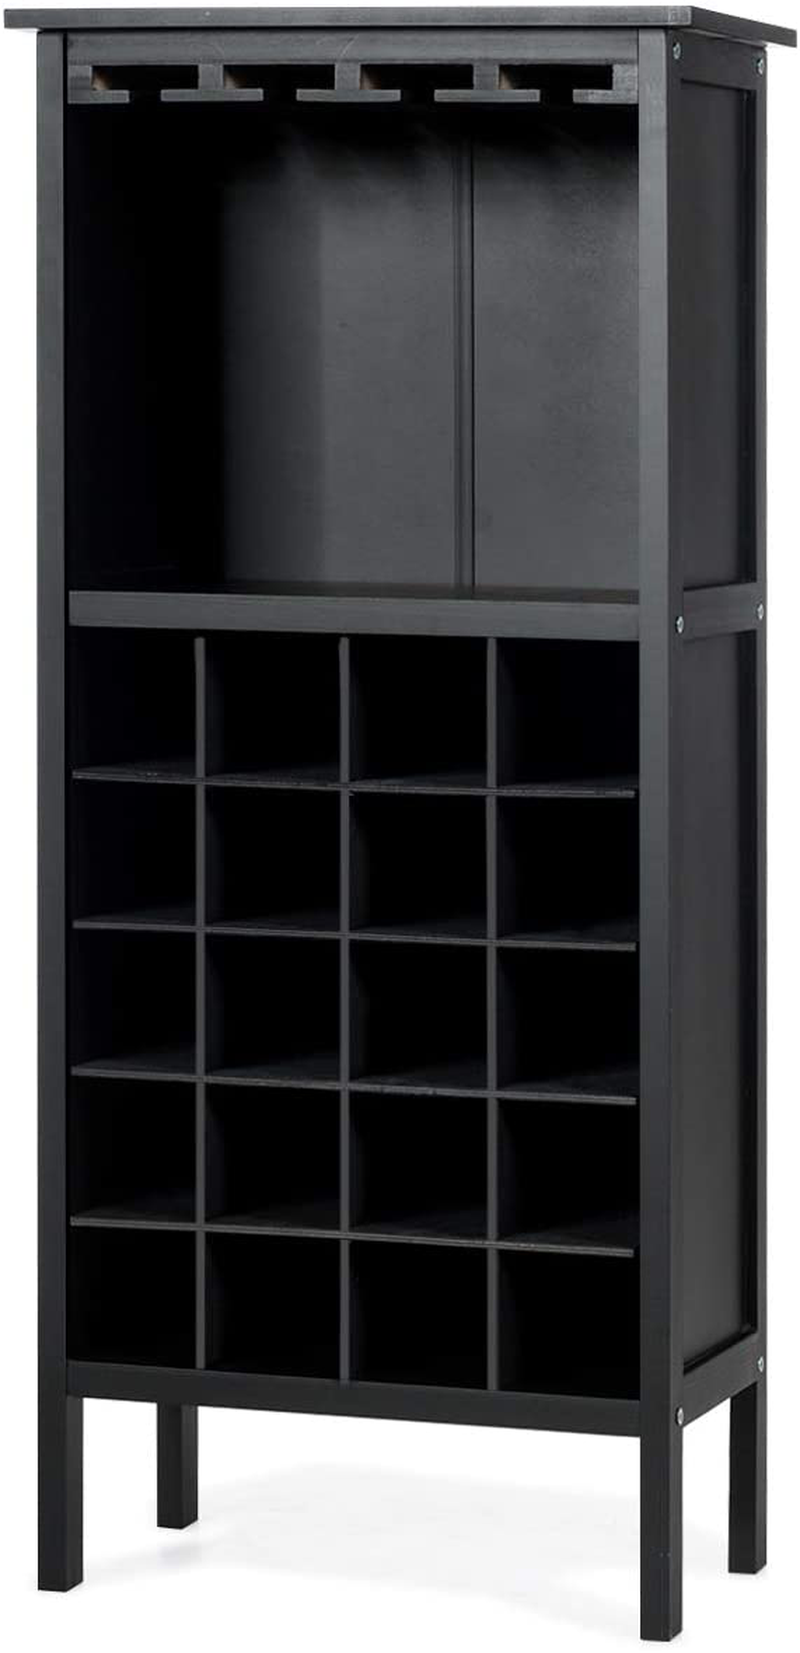 Kolding Wooden Wine Holder Storage Stand 